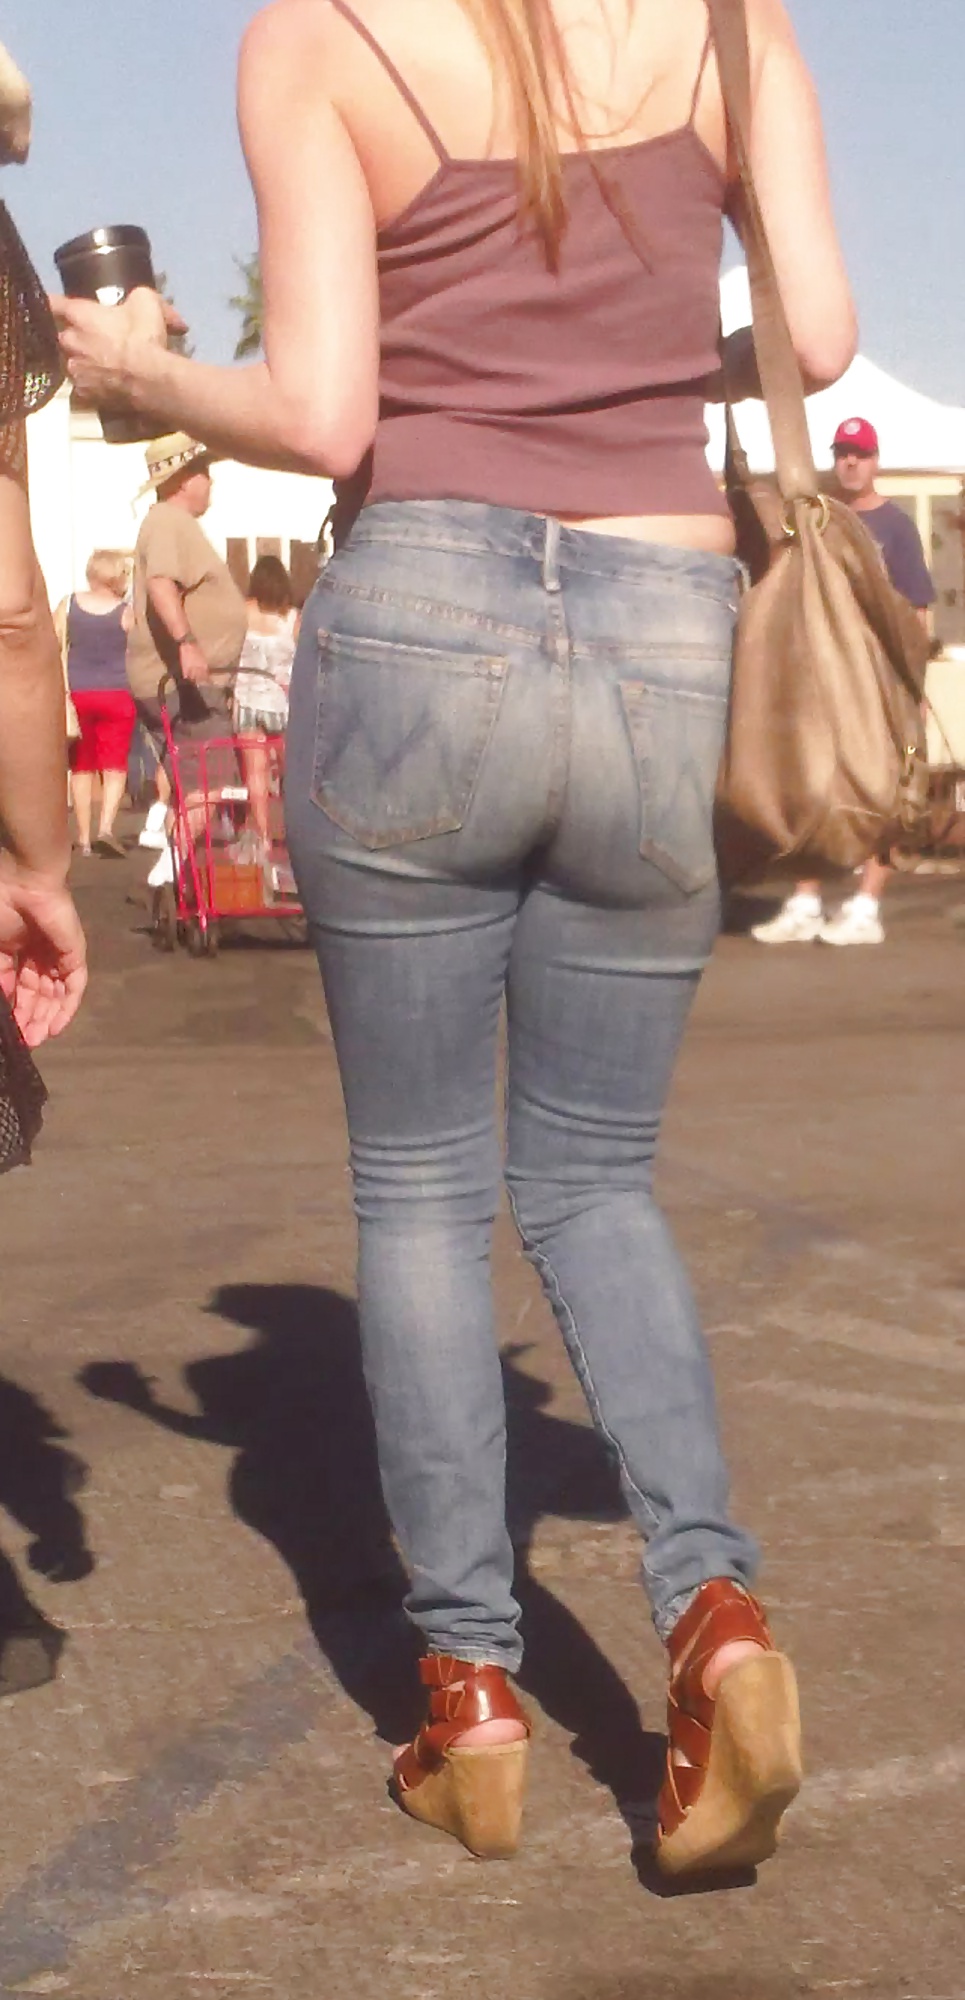 Popular teen girls ass & butt in jeans Part 6 #32009750